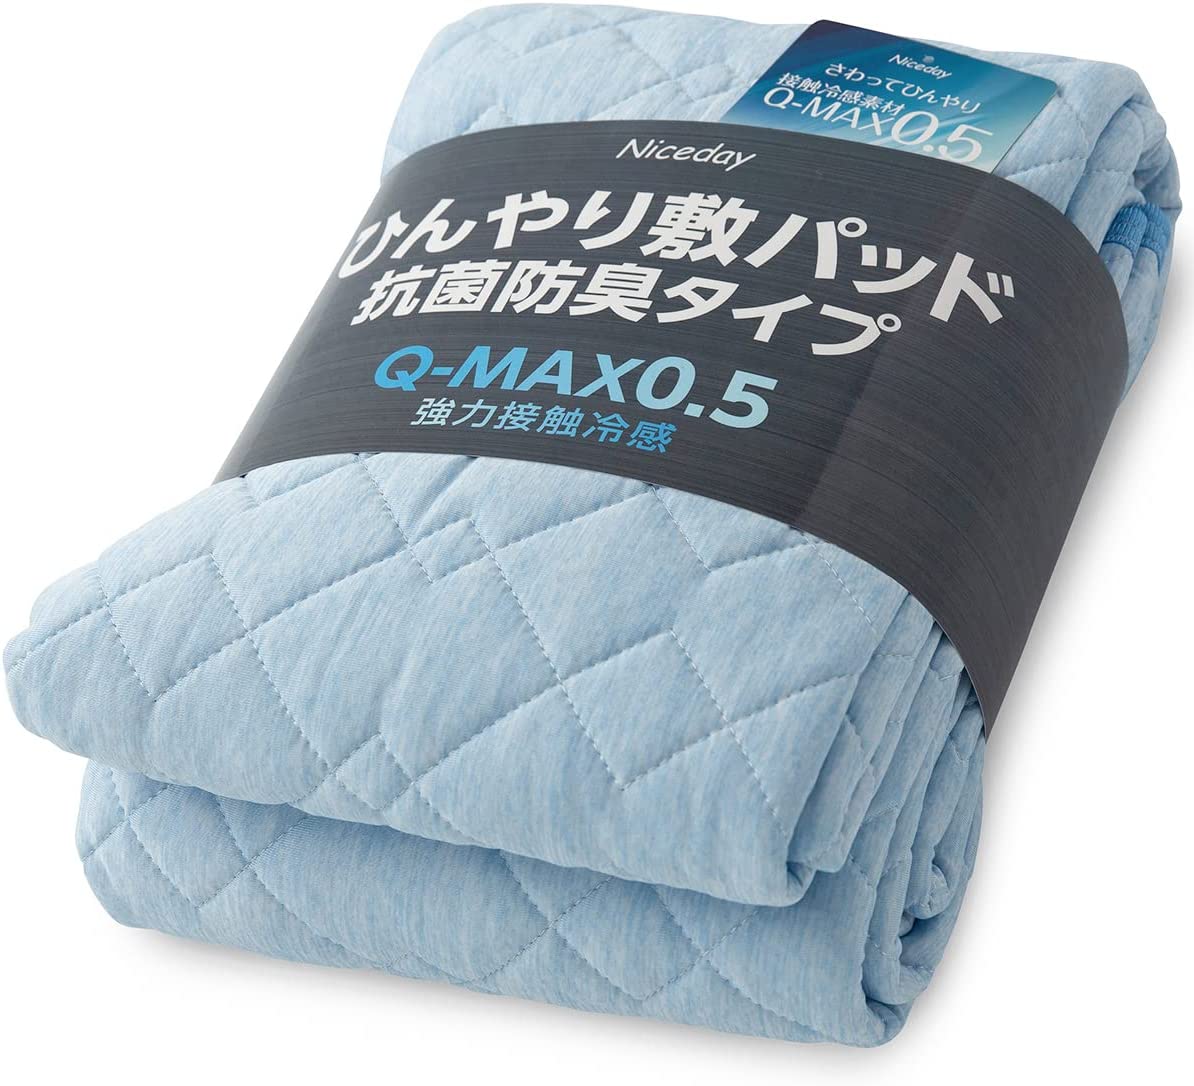 【日本代購】Niceday 涼爽 床墊 觸感清涼 Q-max0.542 可洗 褥墊 抗菌 防臭 雙面可用 天空藍